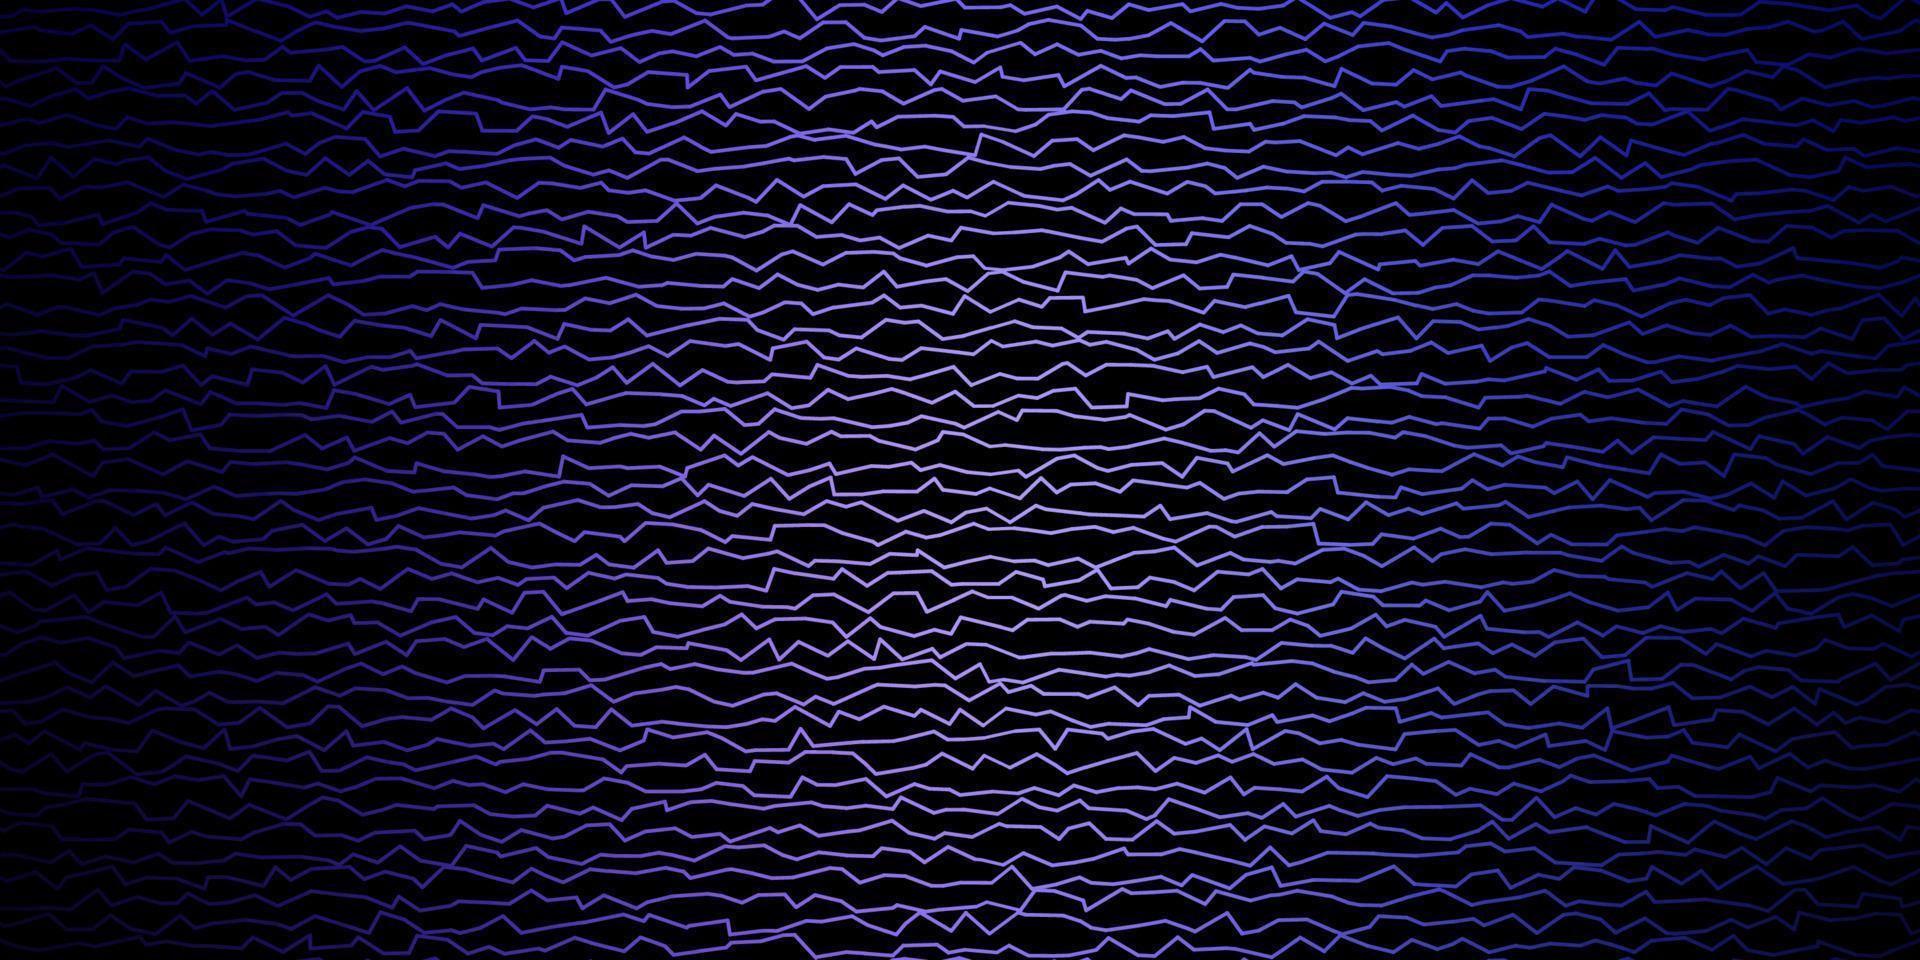 sfondo vettoriale viola scuro con arco circolare.